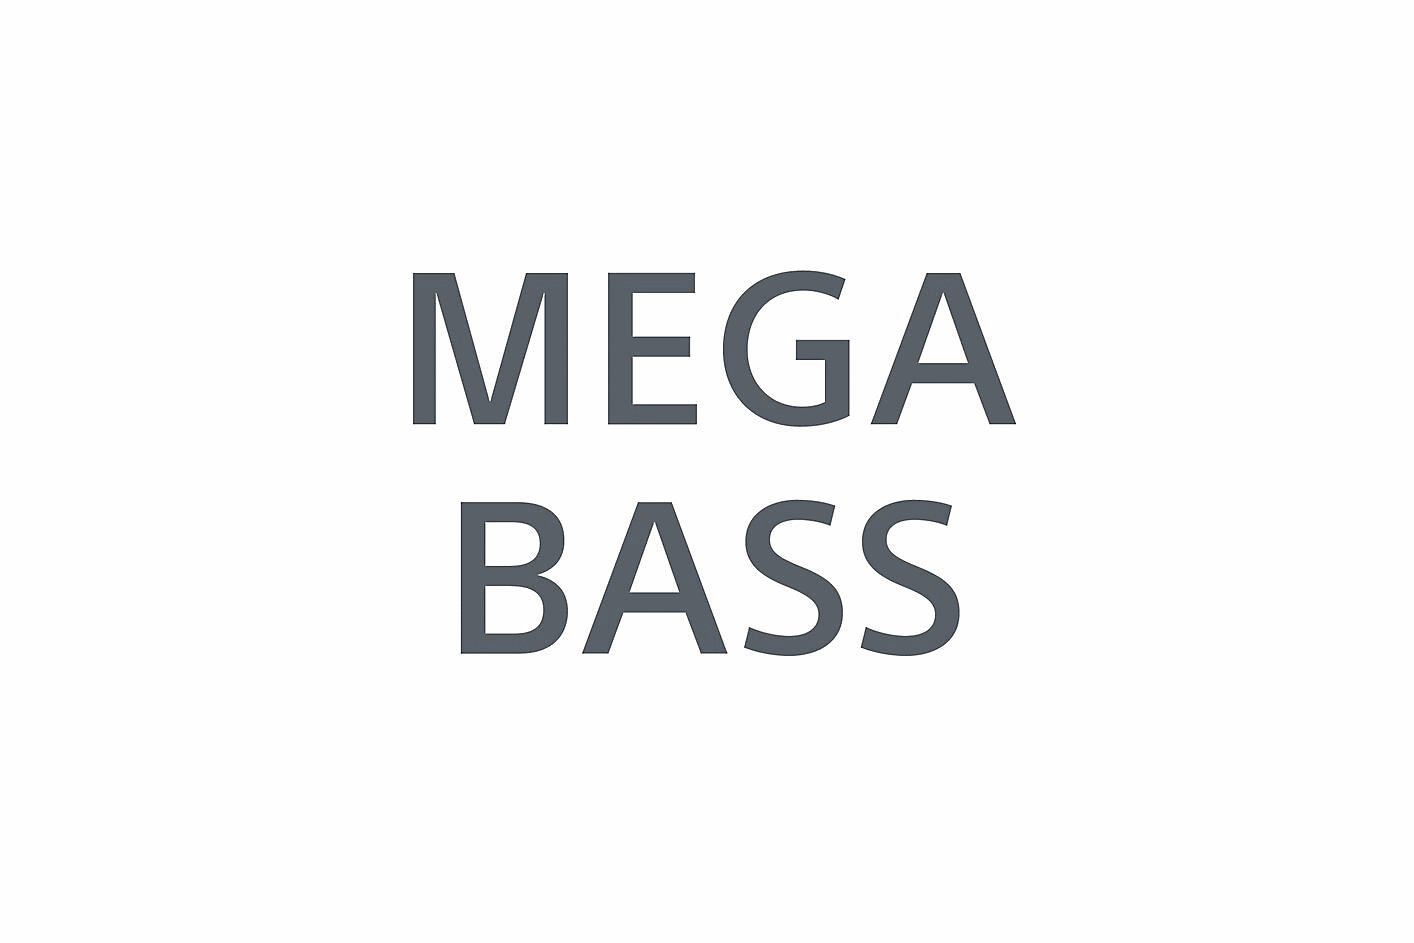 Εικόνα των λέξεων MEGA BASS